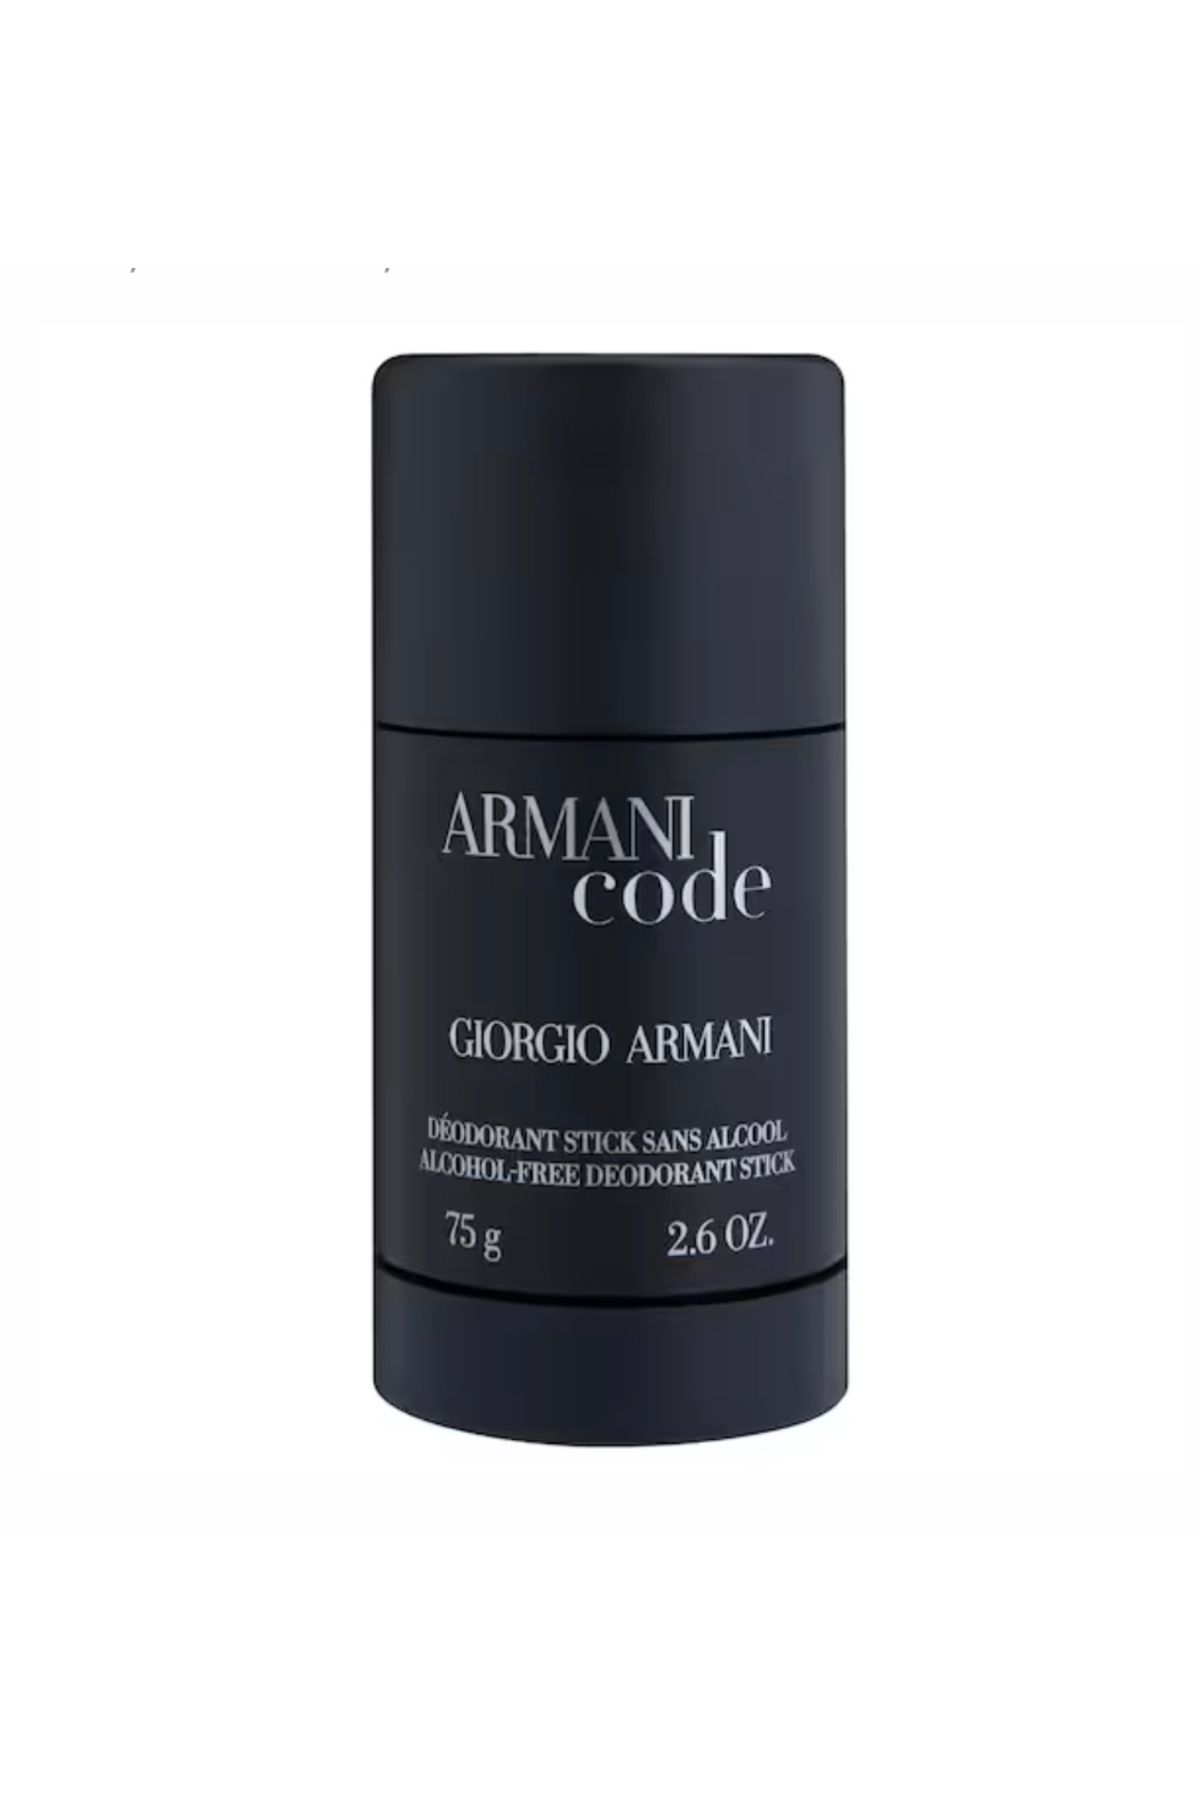 Giorgio Armani ARMANI CODE HOMME - Stick Deodorant 75gr